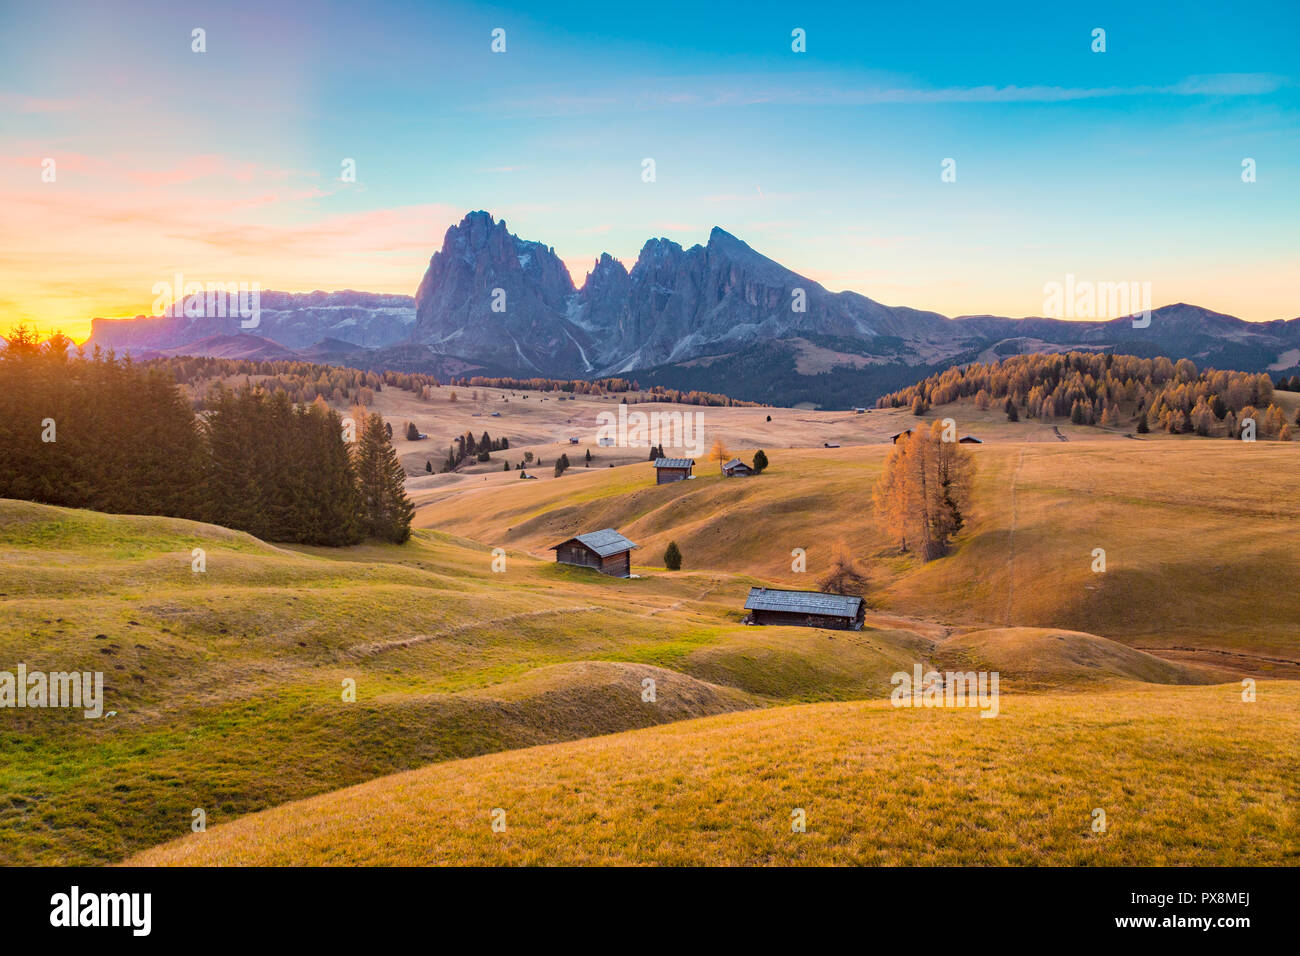 Bellissima vista del legno tradizionale chalet di montagna su SCENIC Alpe di Siusi con il famoso Sassolungo picchi di montagna in background in golden mattina Foto Stock